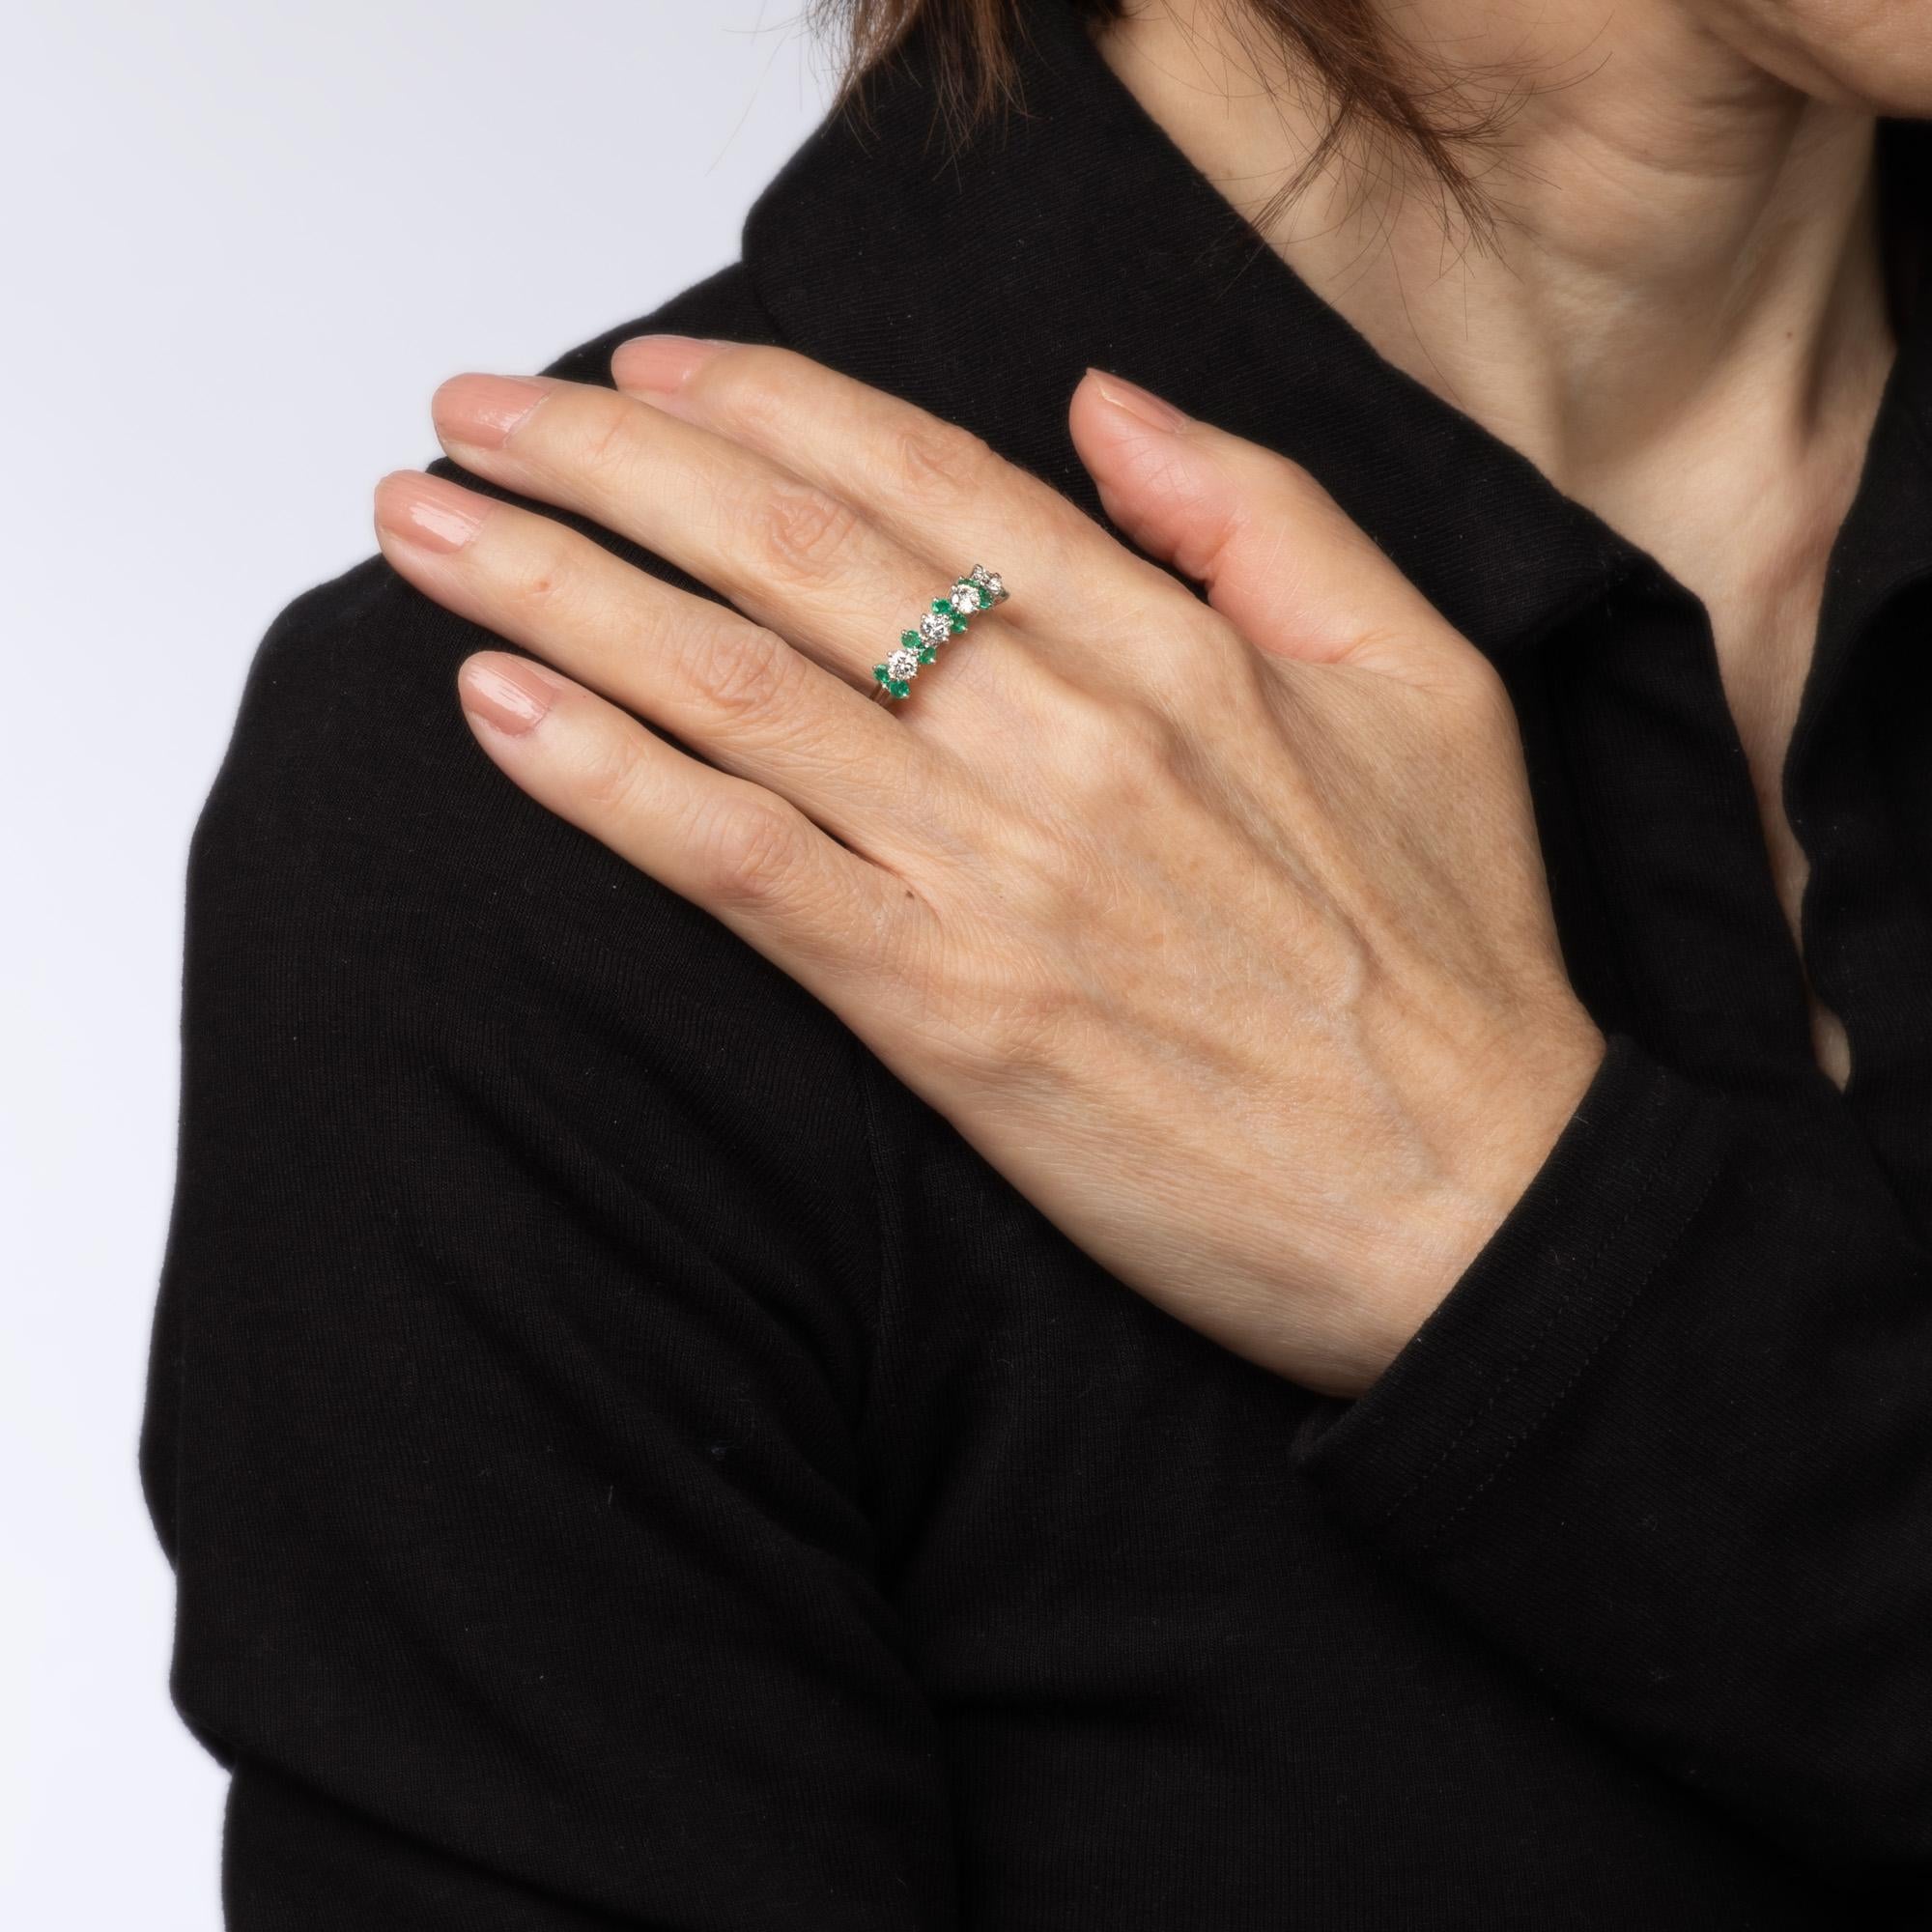 Women's Diamond Emerald Ring Gemstone Band 18k White Gold Anniversary Fine Jewelry